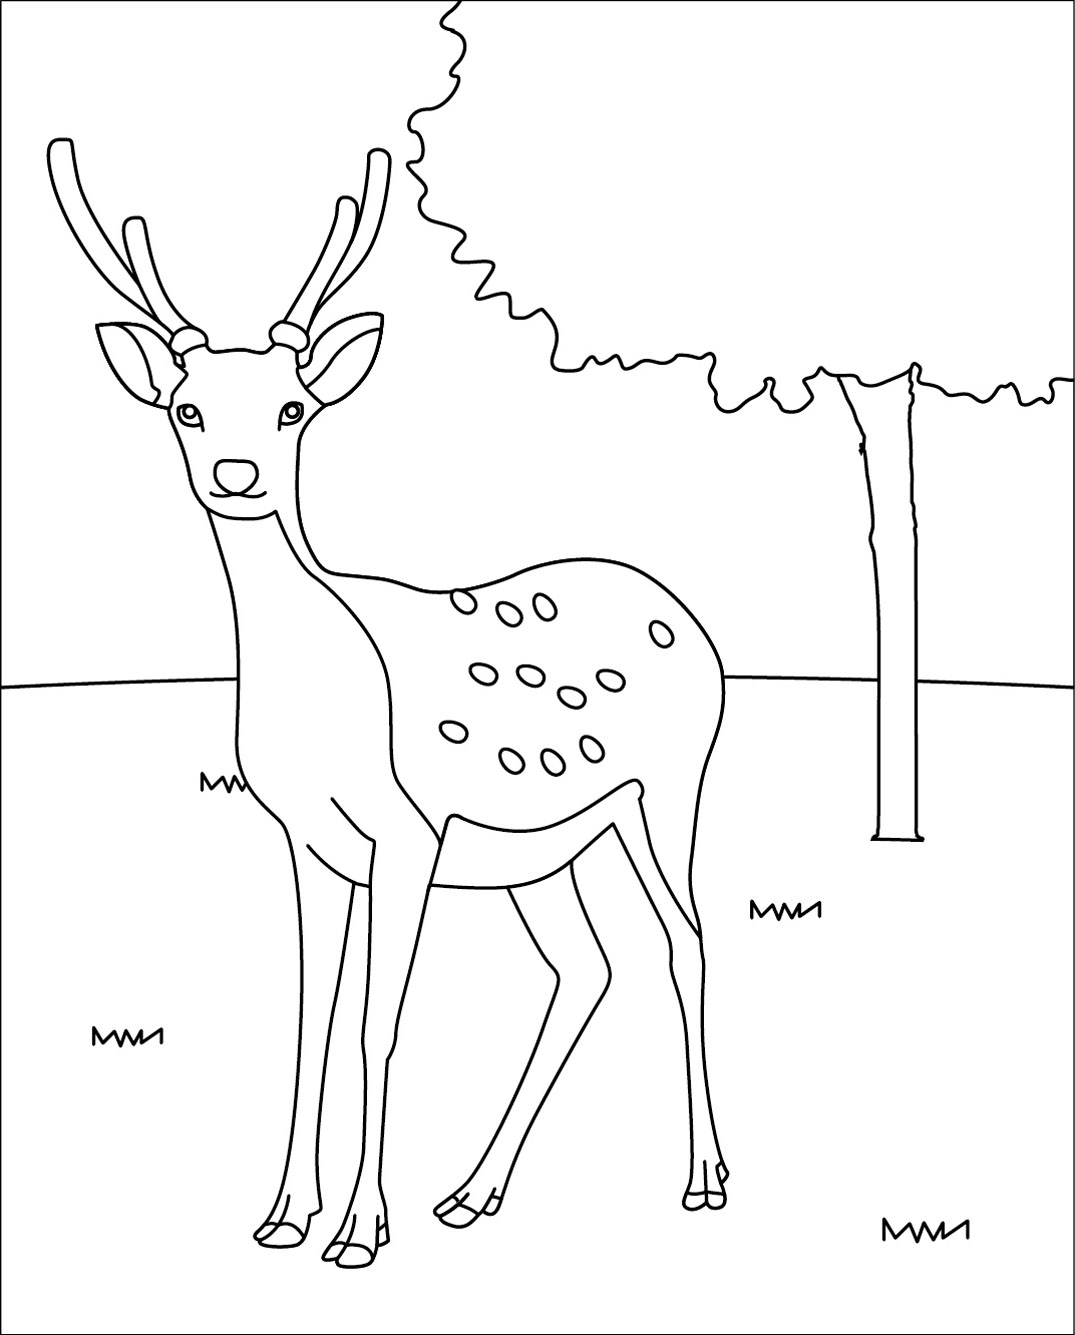 無料の動物画像 最高奈良 イラスト 鹿